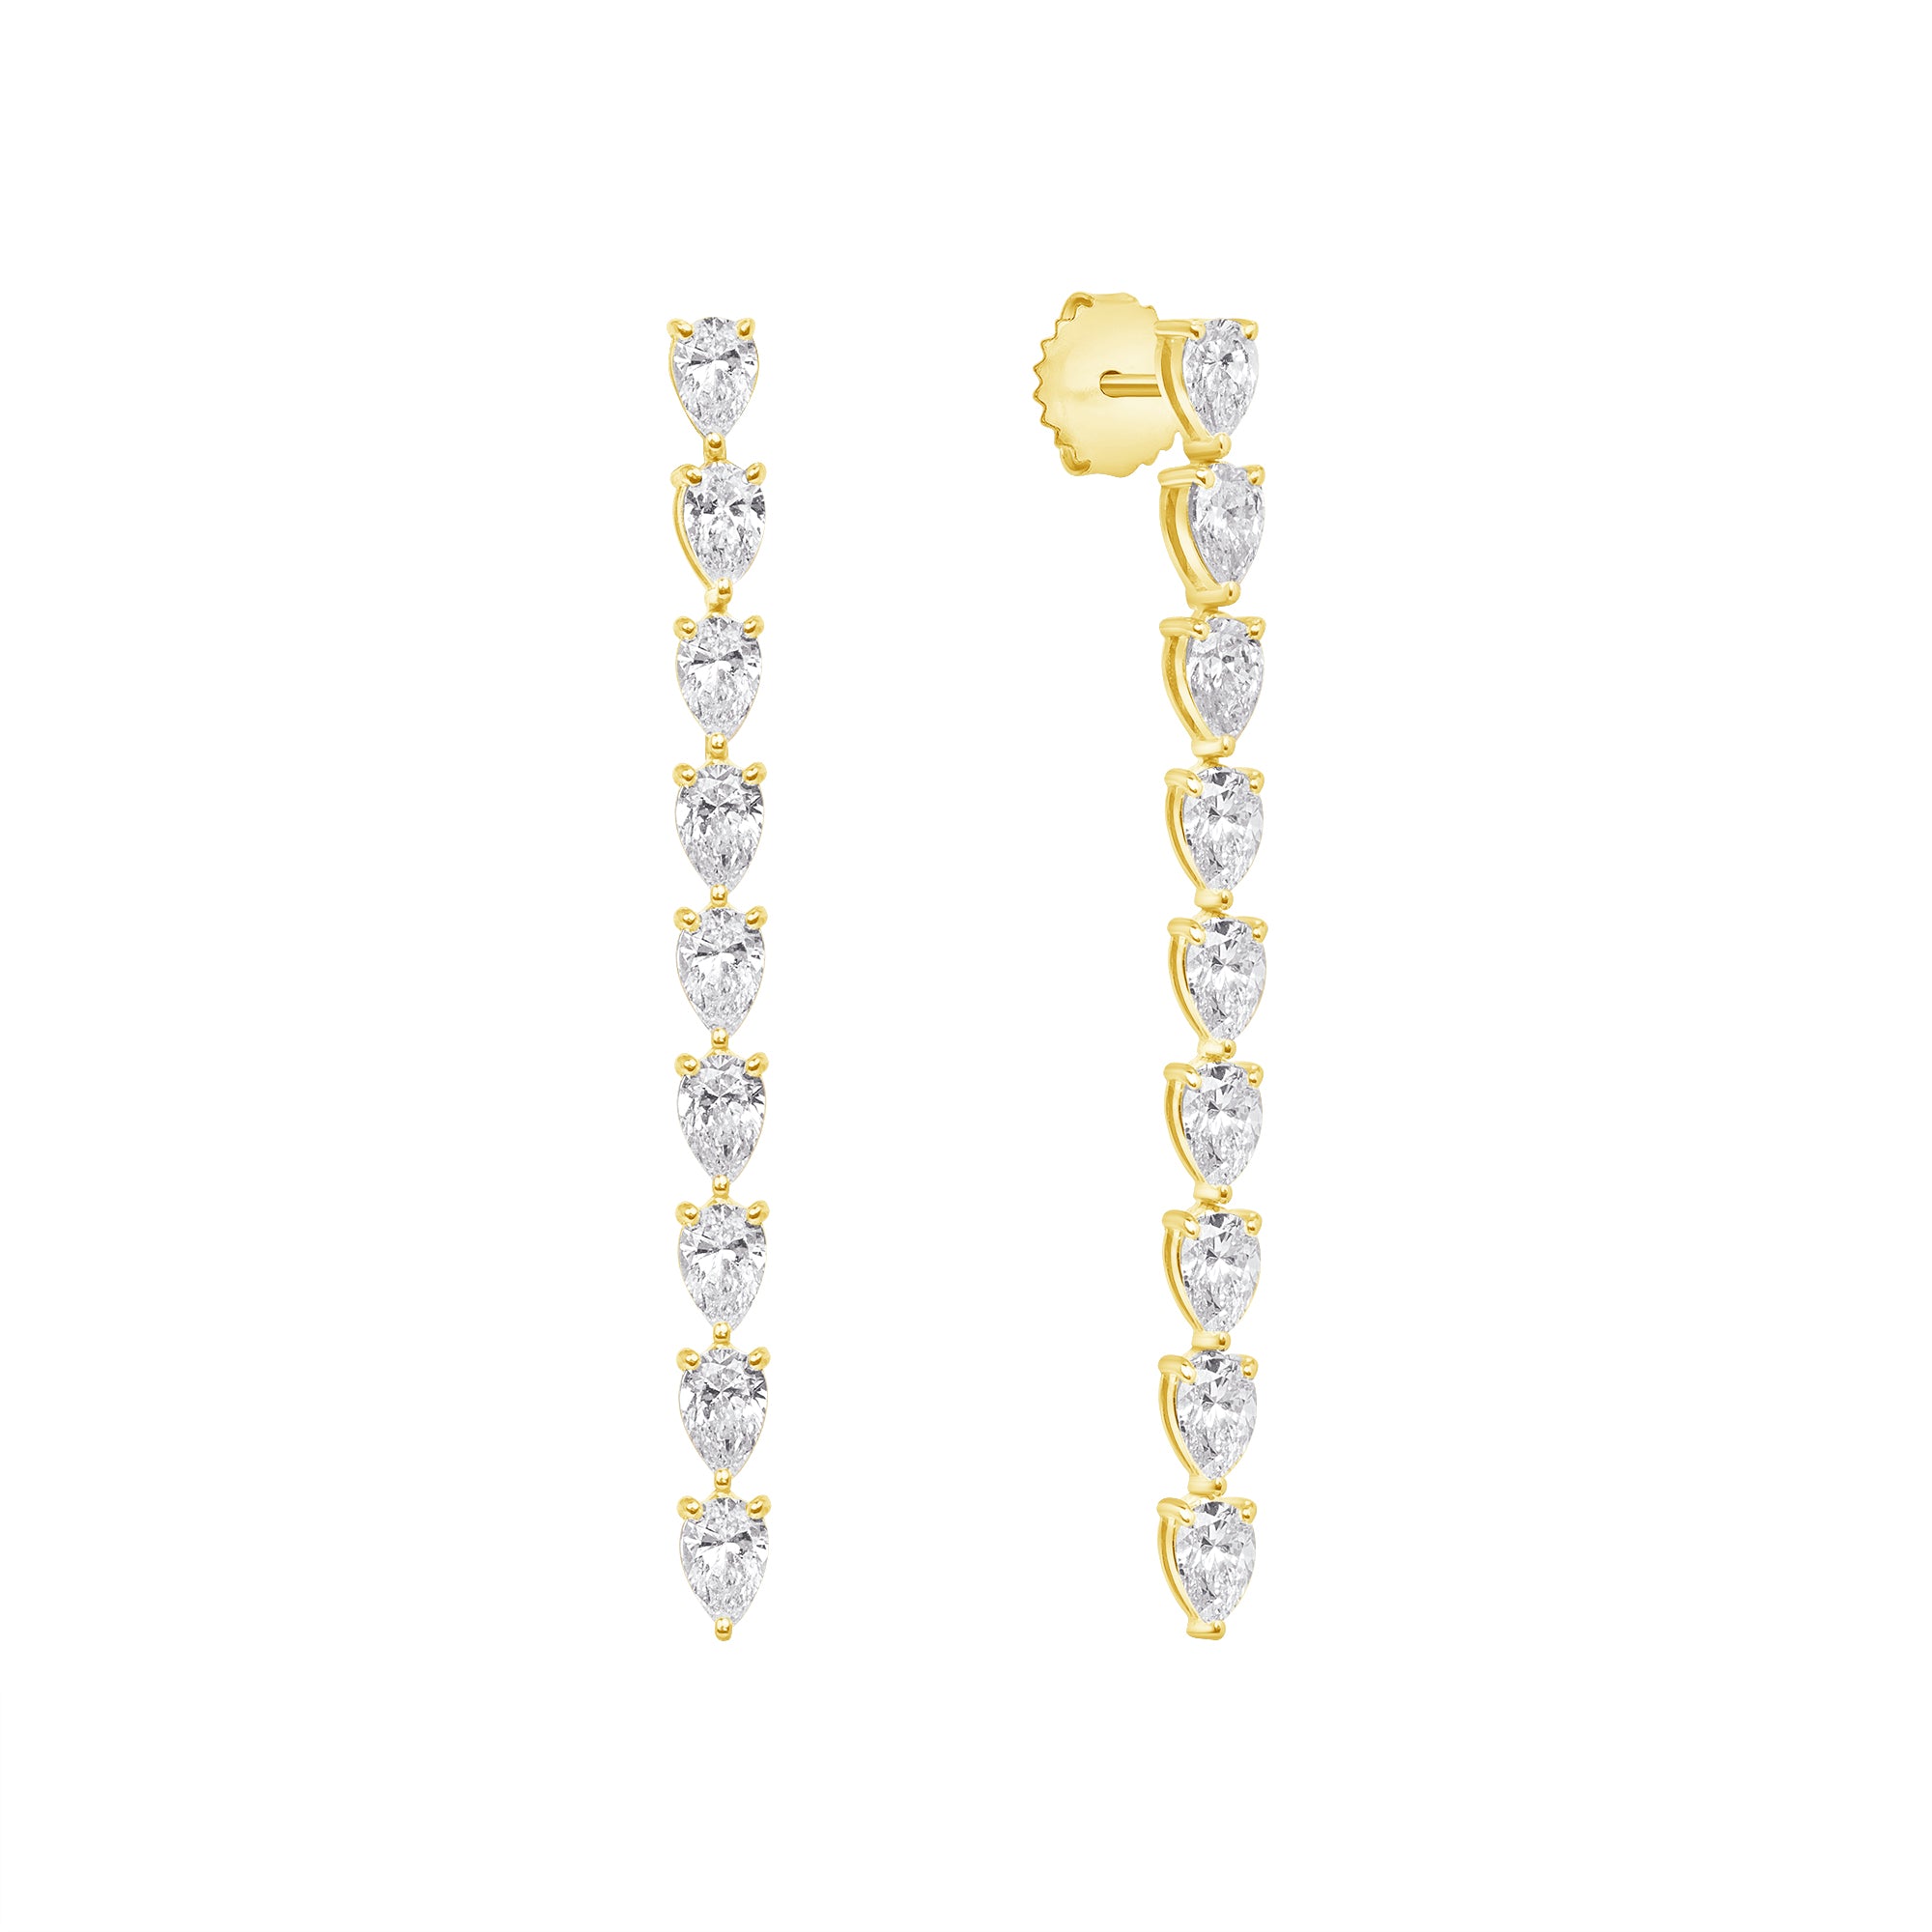 Pear Shaped Diamond Shoulder Duster Earrings in 18K Yellow Gold